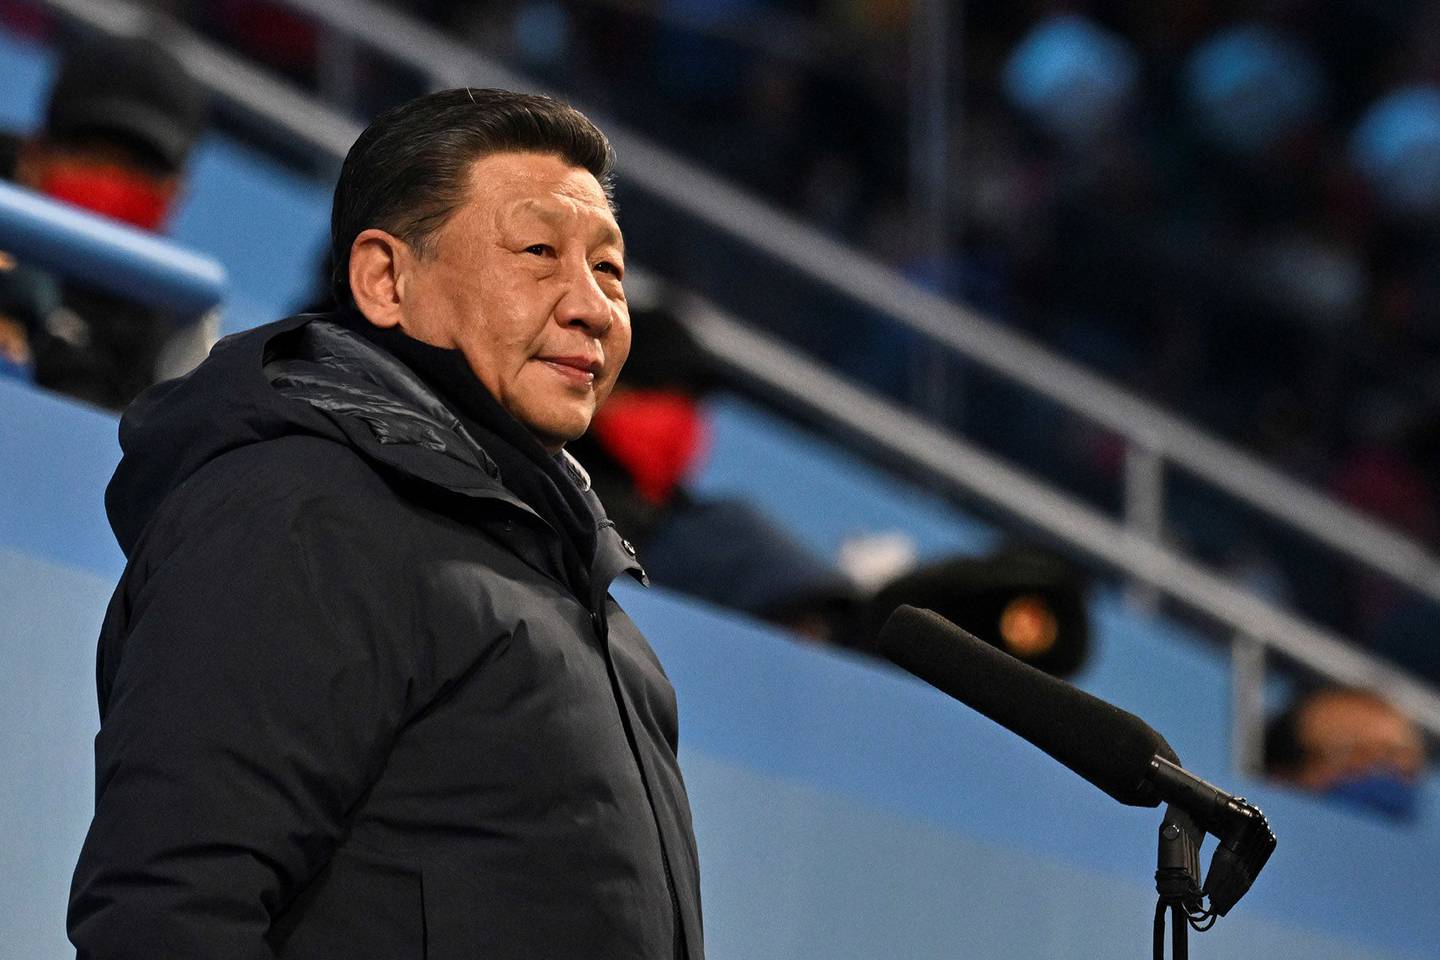 Xi disse que os países devem trabalhar juntos nos esforços para a iniciativa da Nova Rota da Seda, segundo a agência de notícias